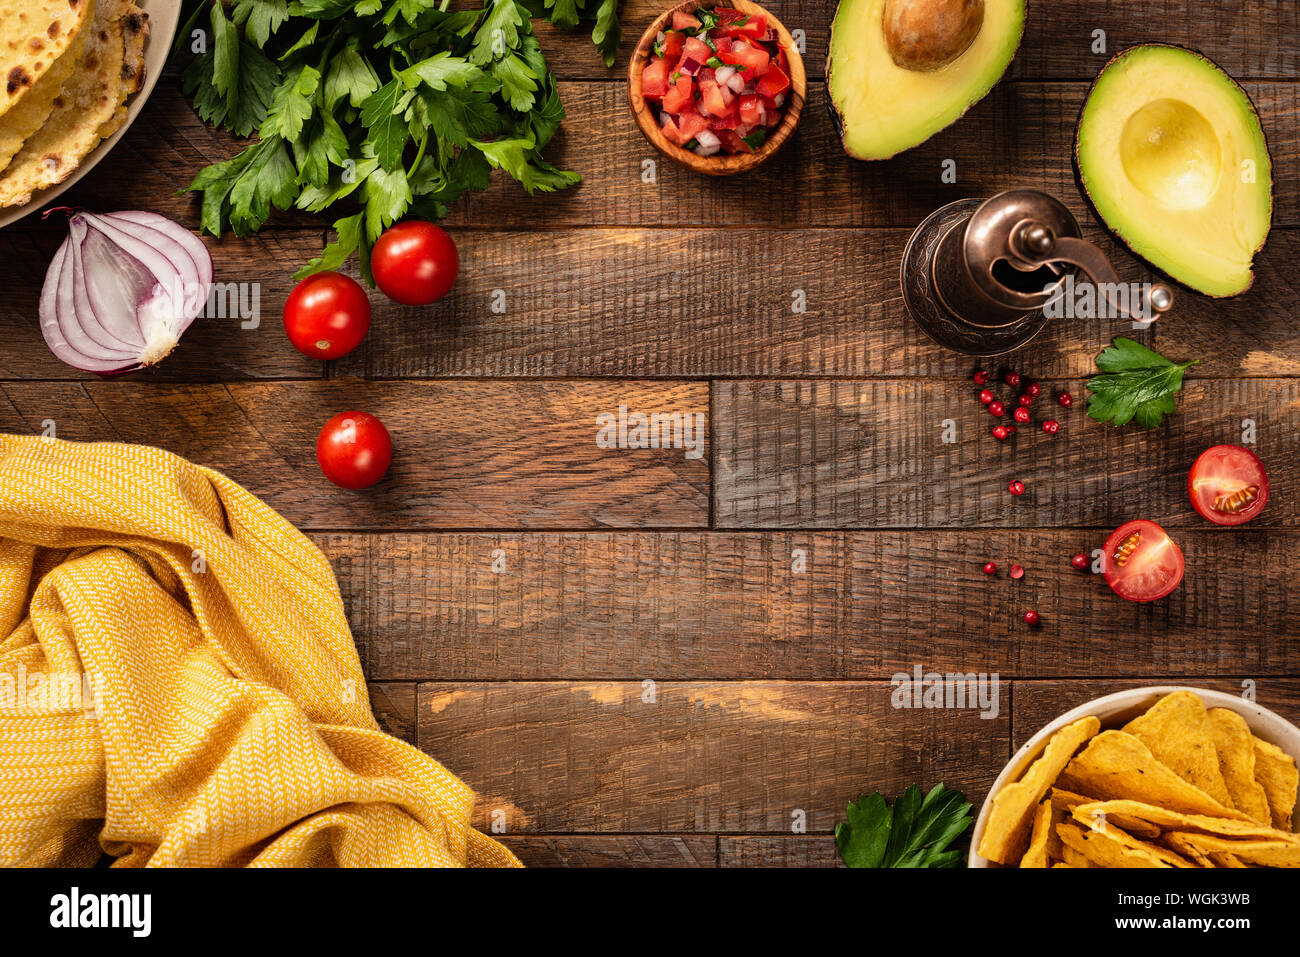 Cadre de l'alimentation avec des légumes et épices pour la cuisine sur un fond de bois. Vue de dessus, copiez l'espace. Concept d'aliments épicés mexicains Banque D'Images